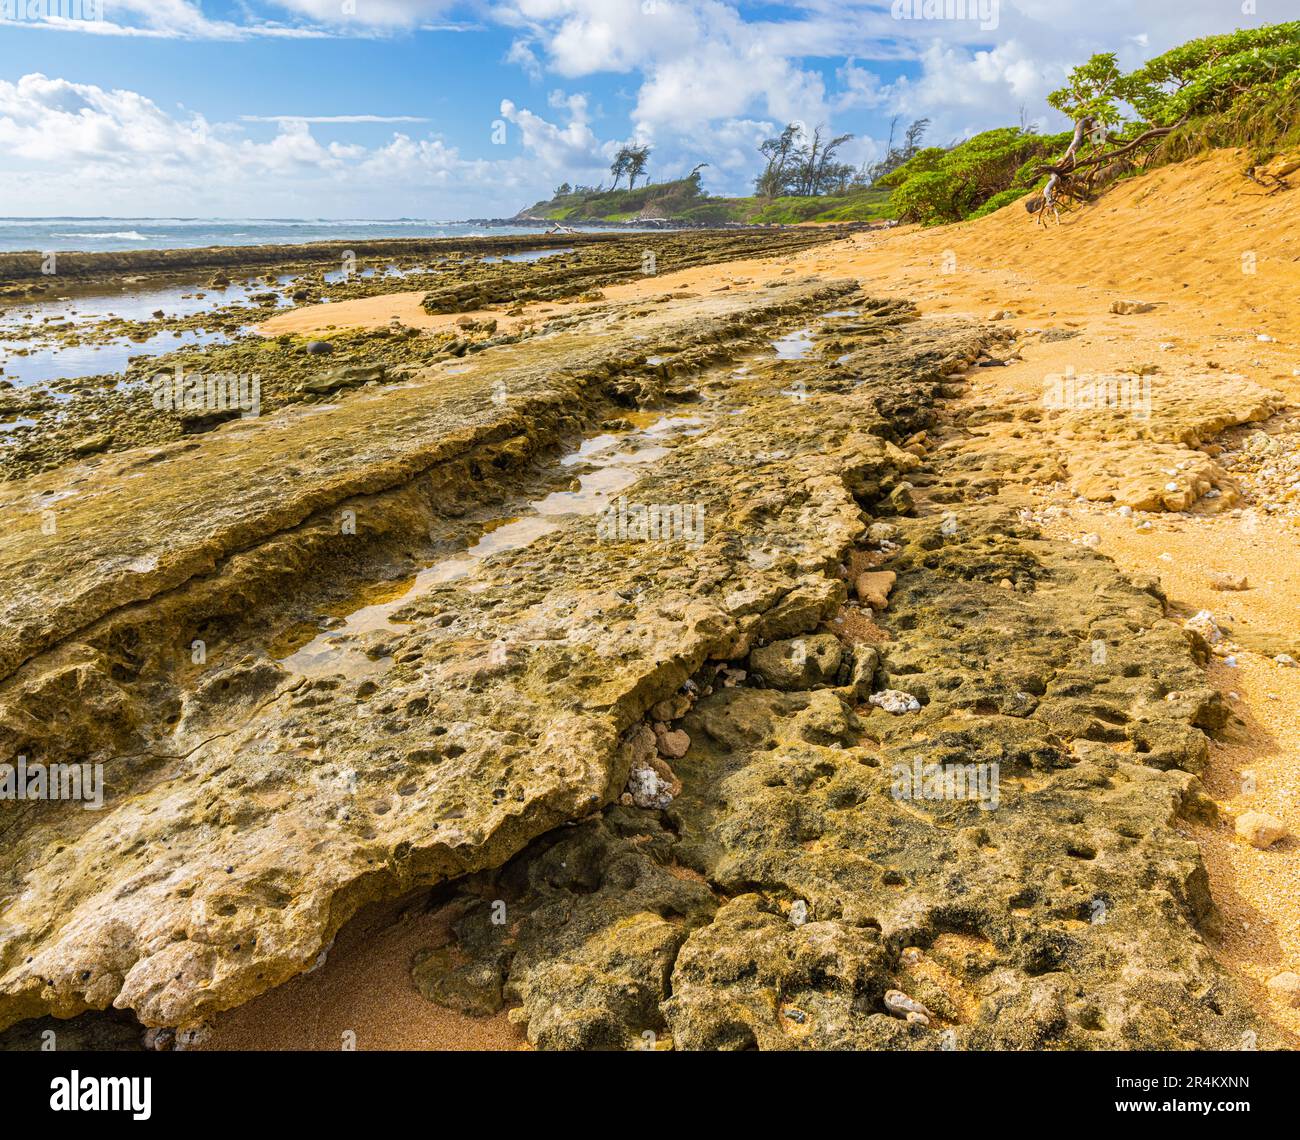 Arrecifes de coral expuestos y piscinas de marea en Nukolii Beach, Kauai, Hawai, Estados Unidos Foto de stock